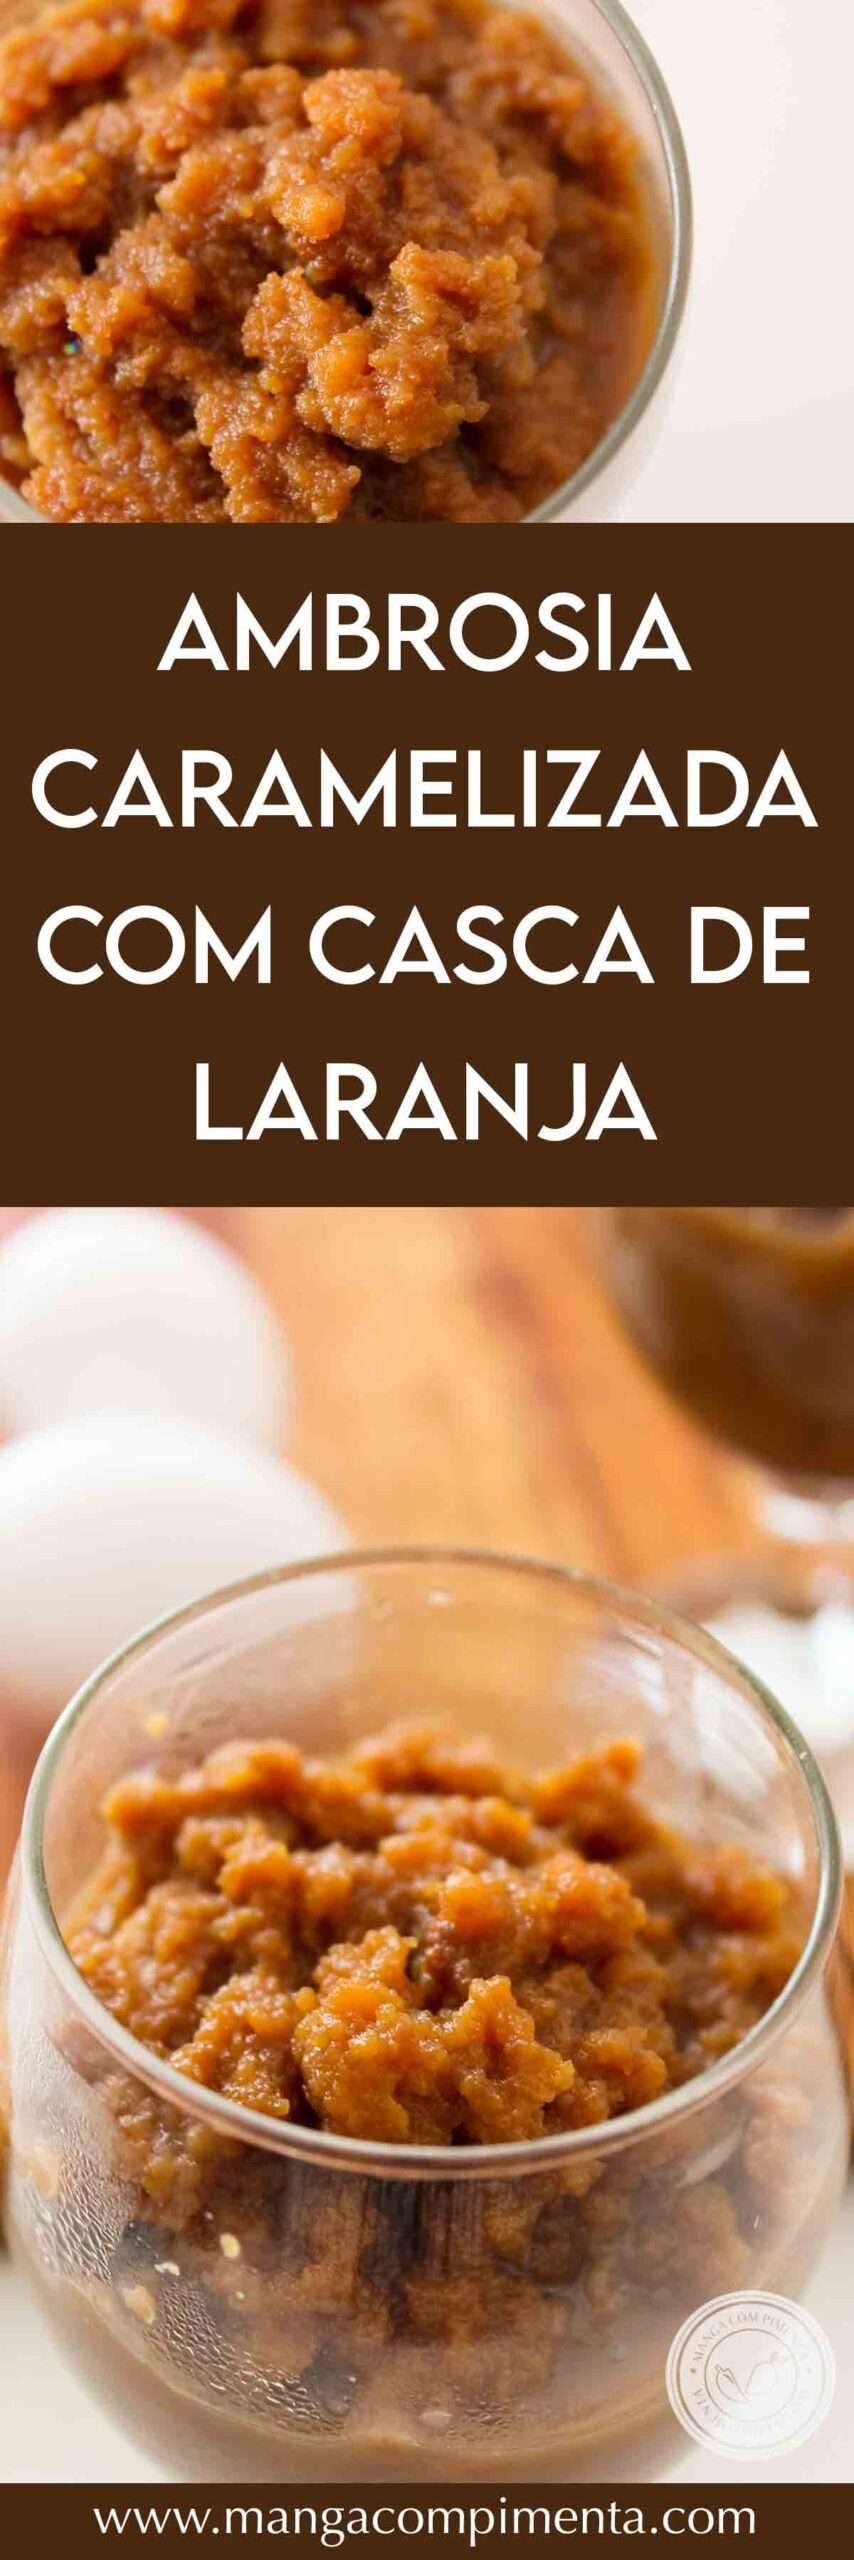 Receita de Ambrosia Caramelizada com Casca de Laranja - um doce colonial para servir no chá da tarde.